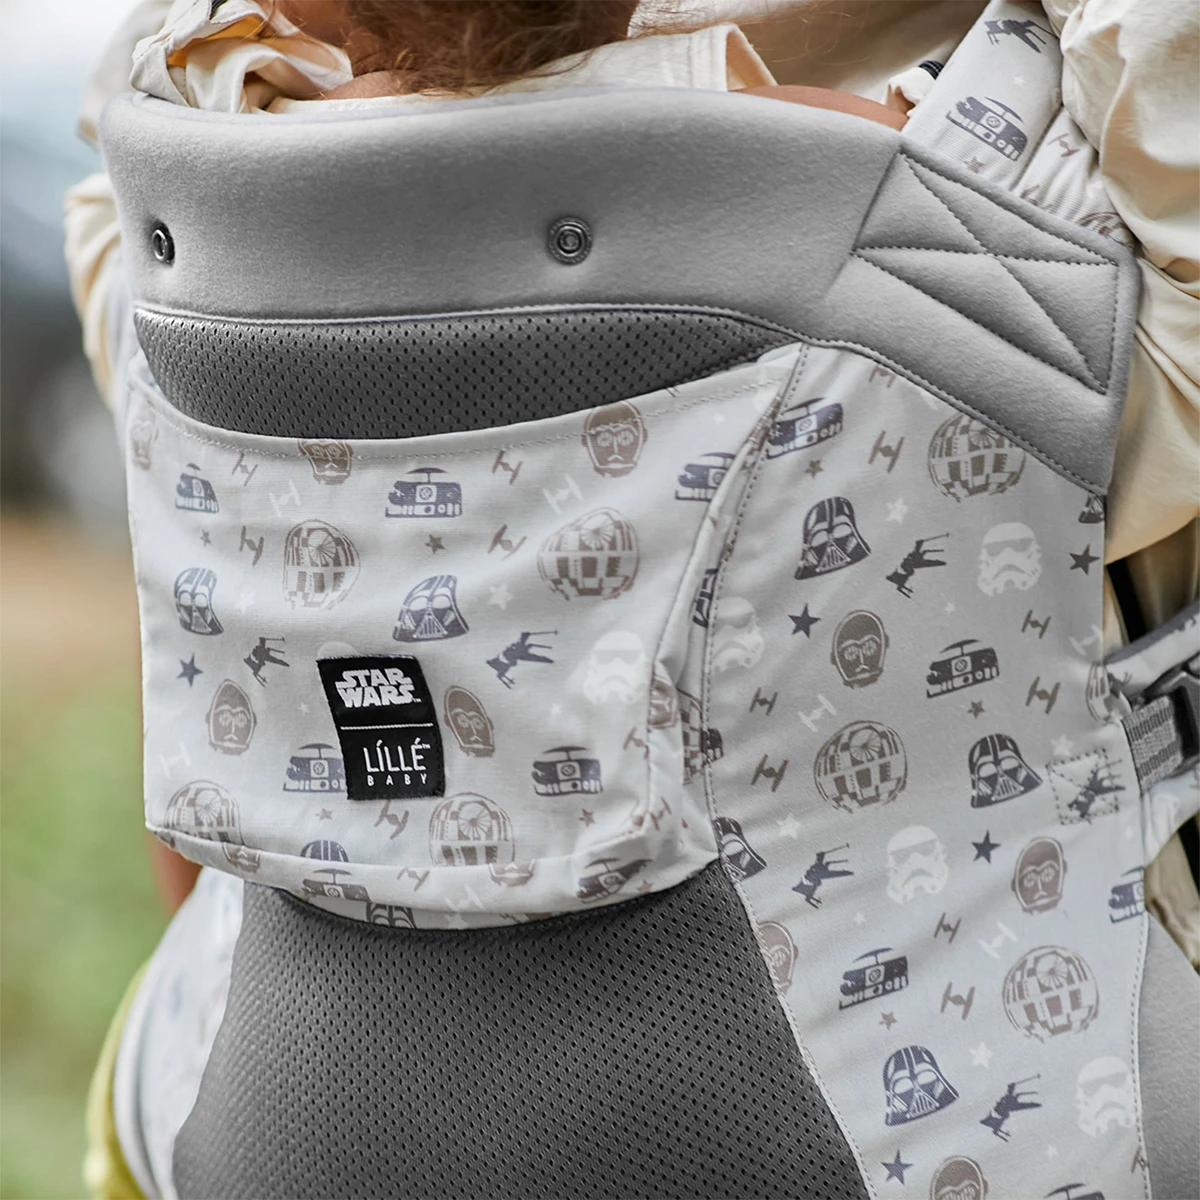 mom wearing baby in CarryOn Airflow DLX - A Galaxy Far Far Away